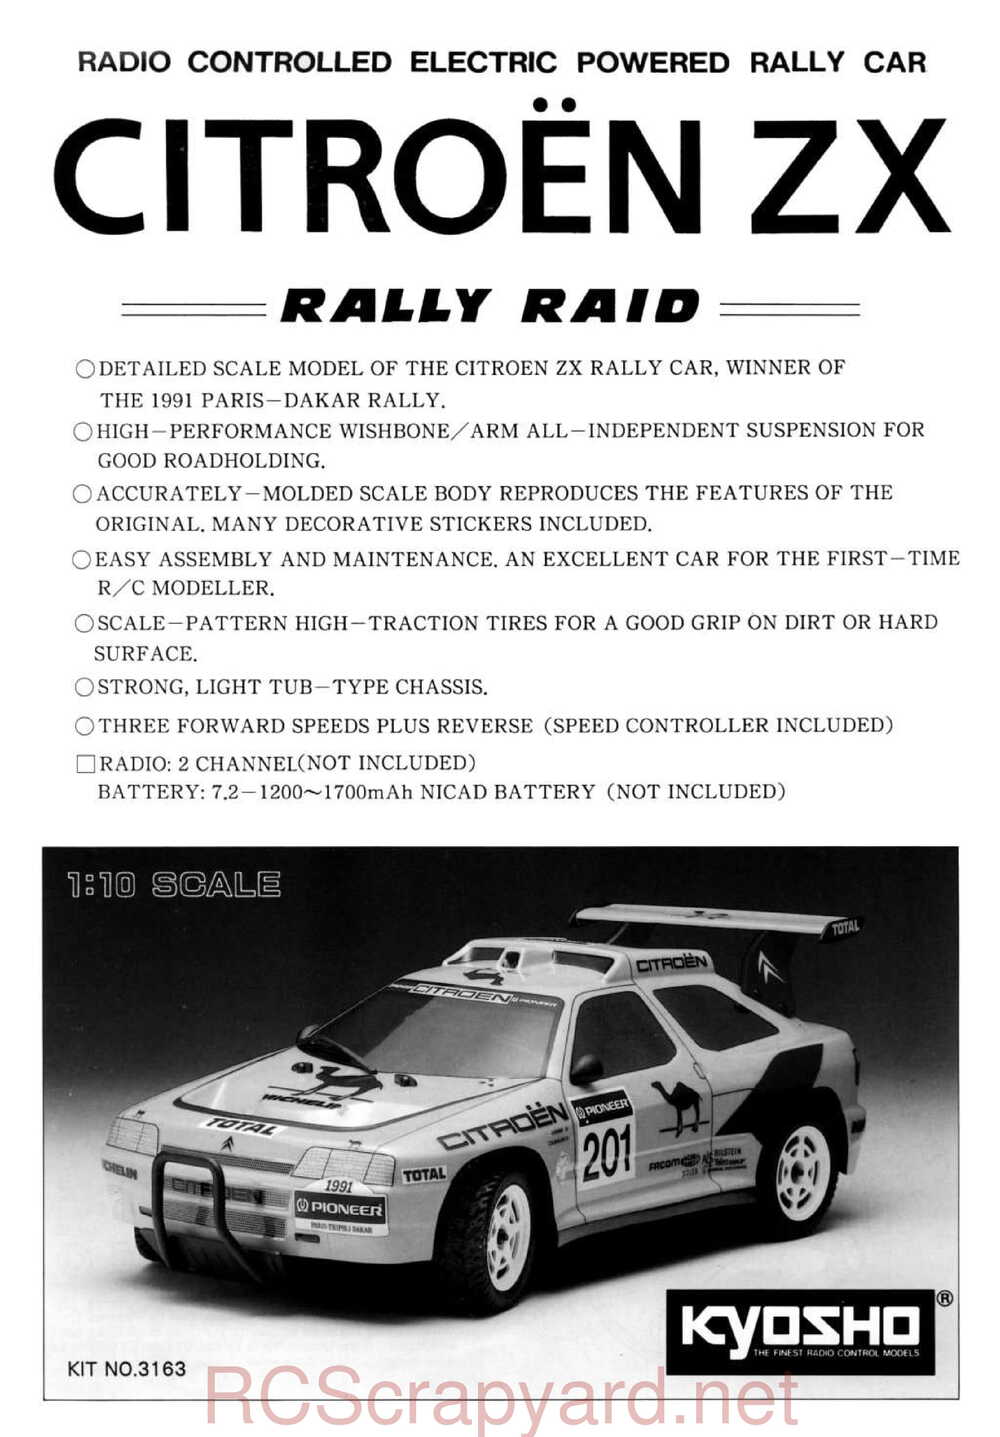 Kyosho - 3163 - Citroen-ZX Rallye Raid - Manual - Page 01